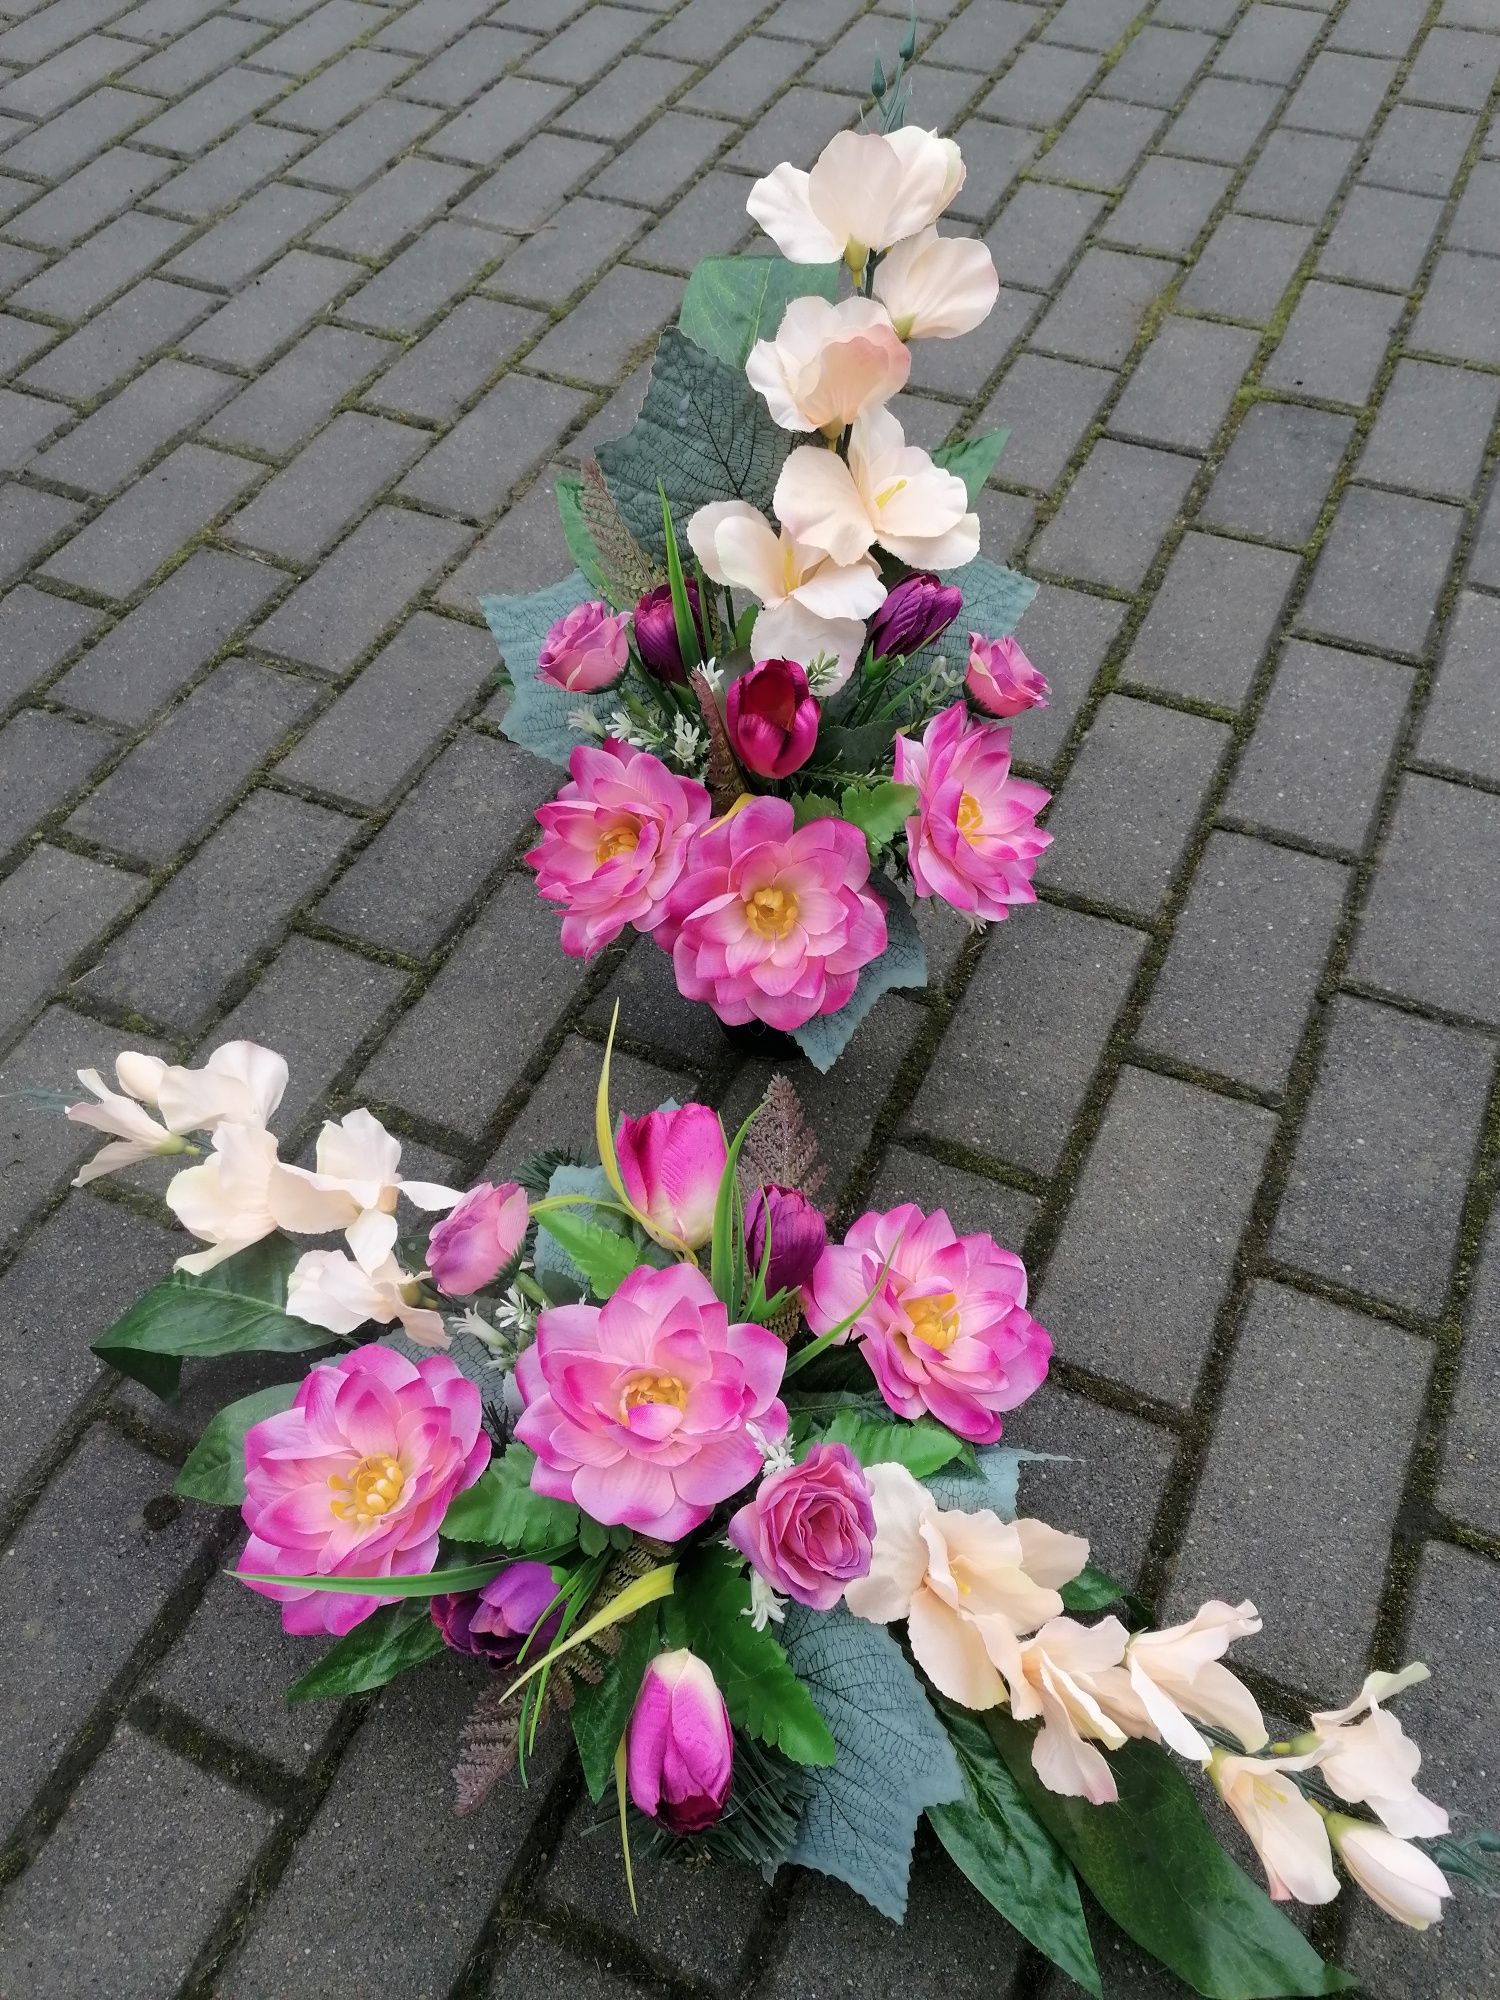 Komplet w odcieniach fioletu wrzosu, kremowy róż